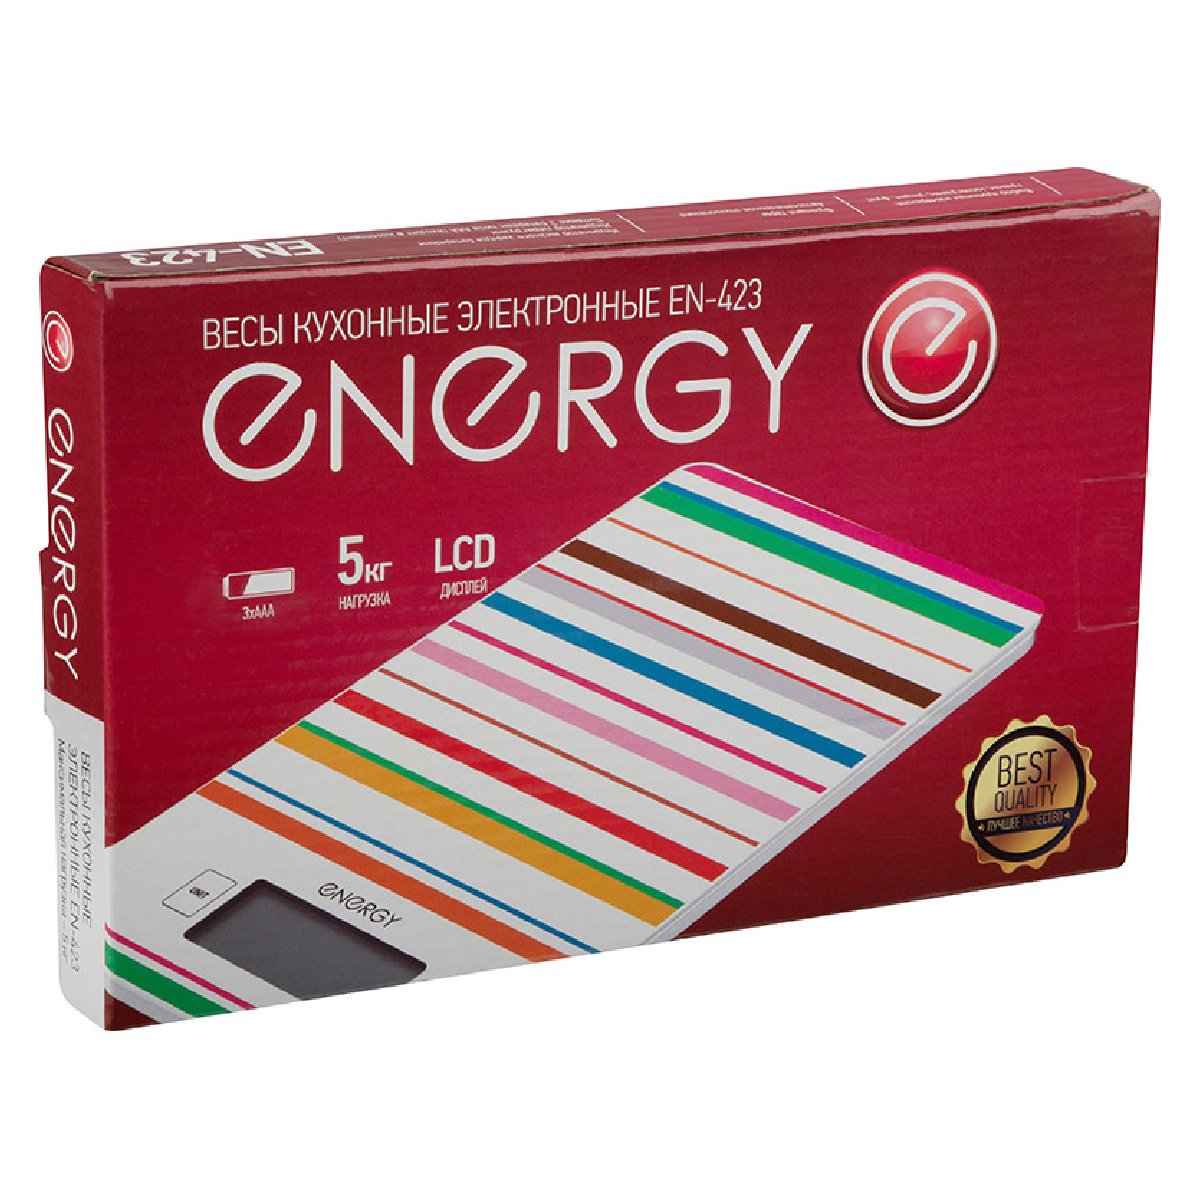 Energy EN-423 Электронные кухонные весы 5кг 1г (полоска)